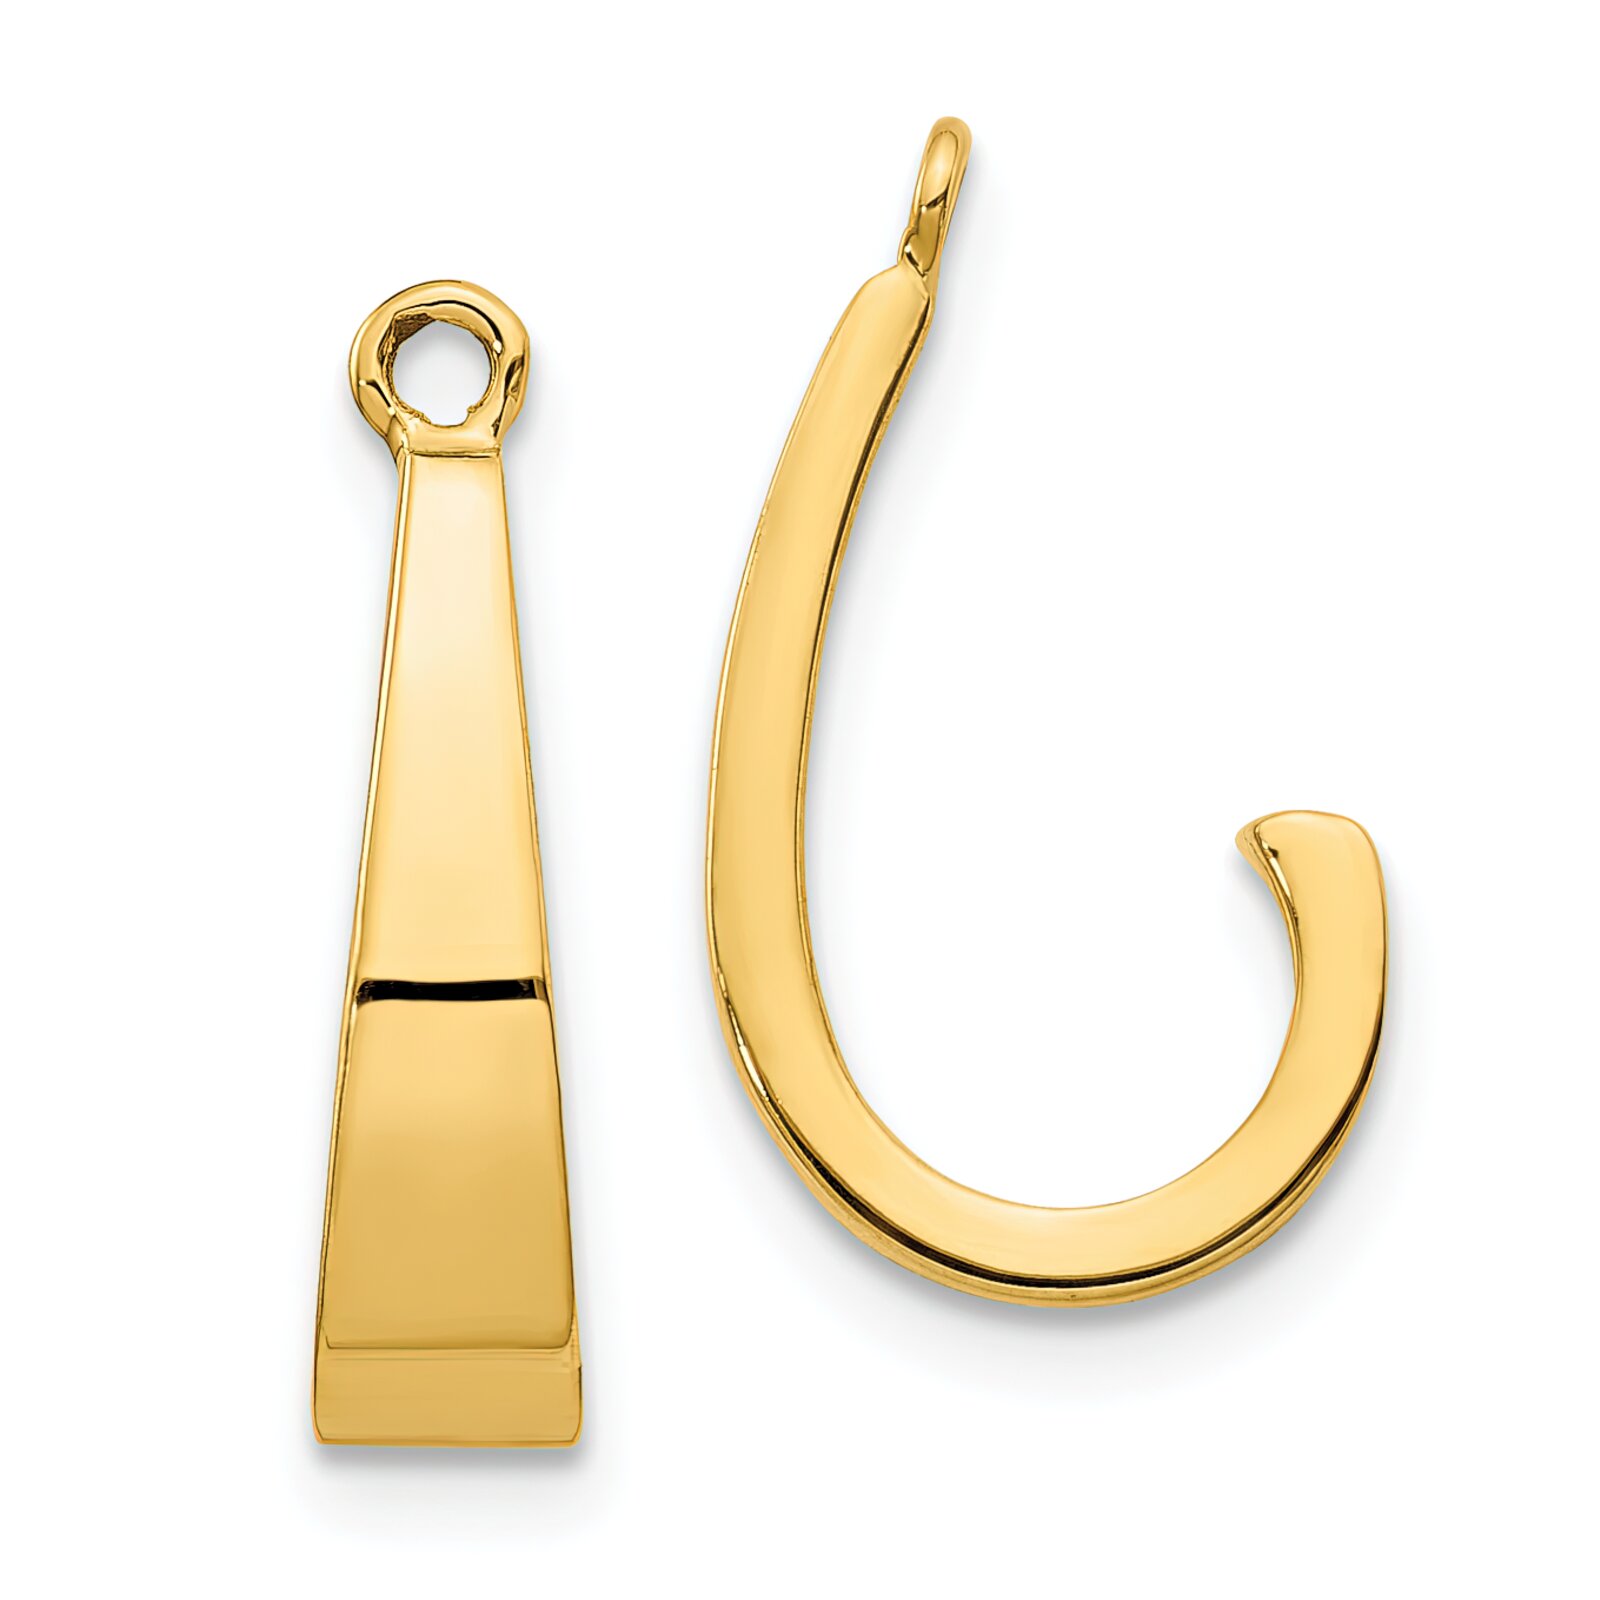 Findingking 14K Yellow Gold J Hoop Earring Jackets Jewelry